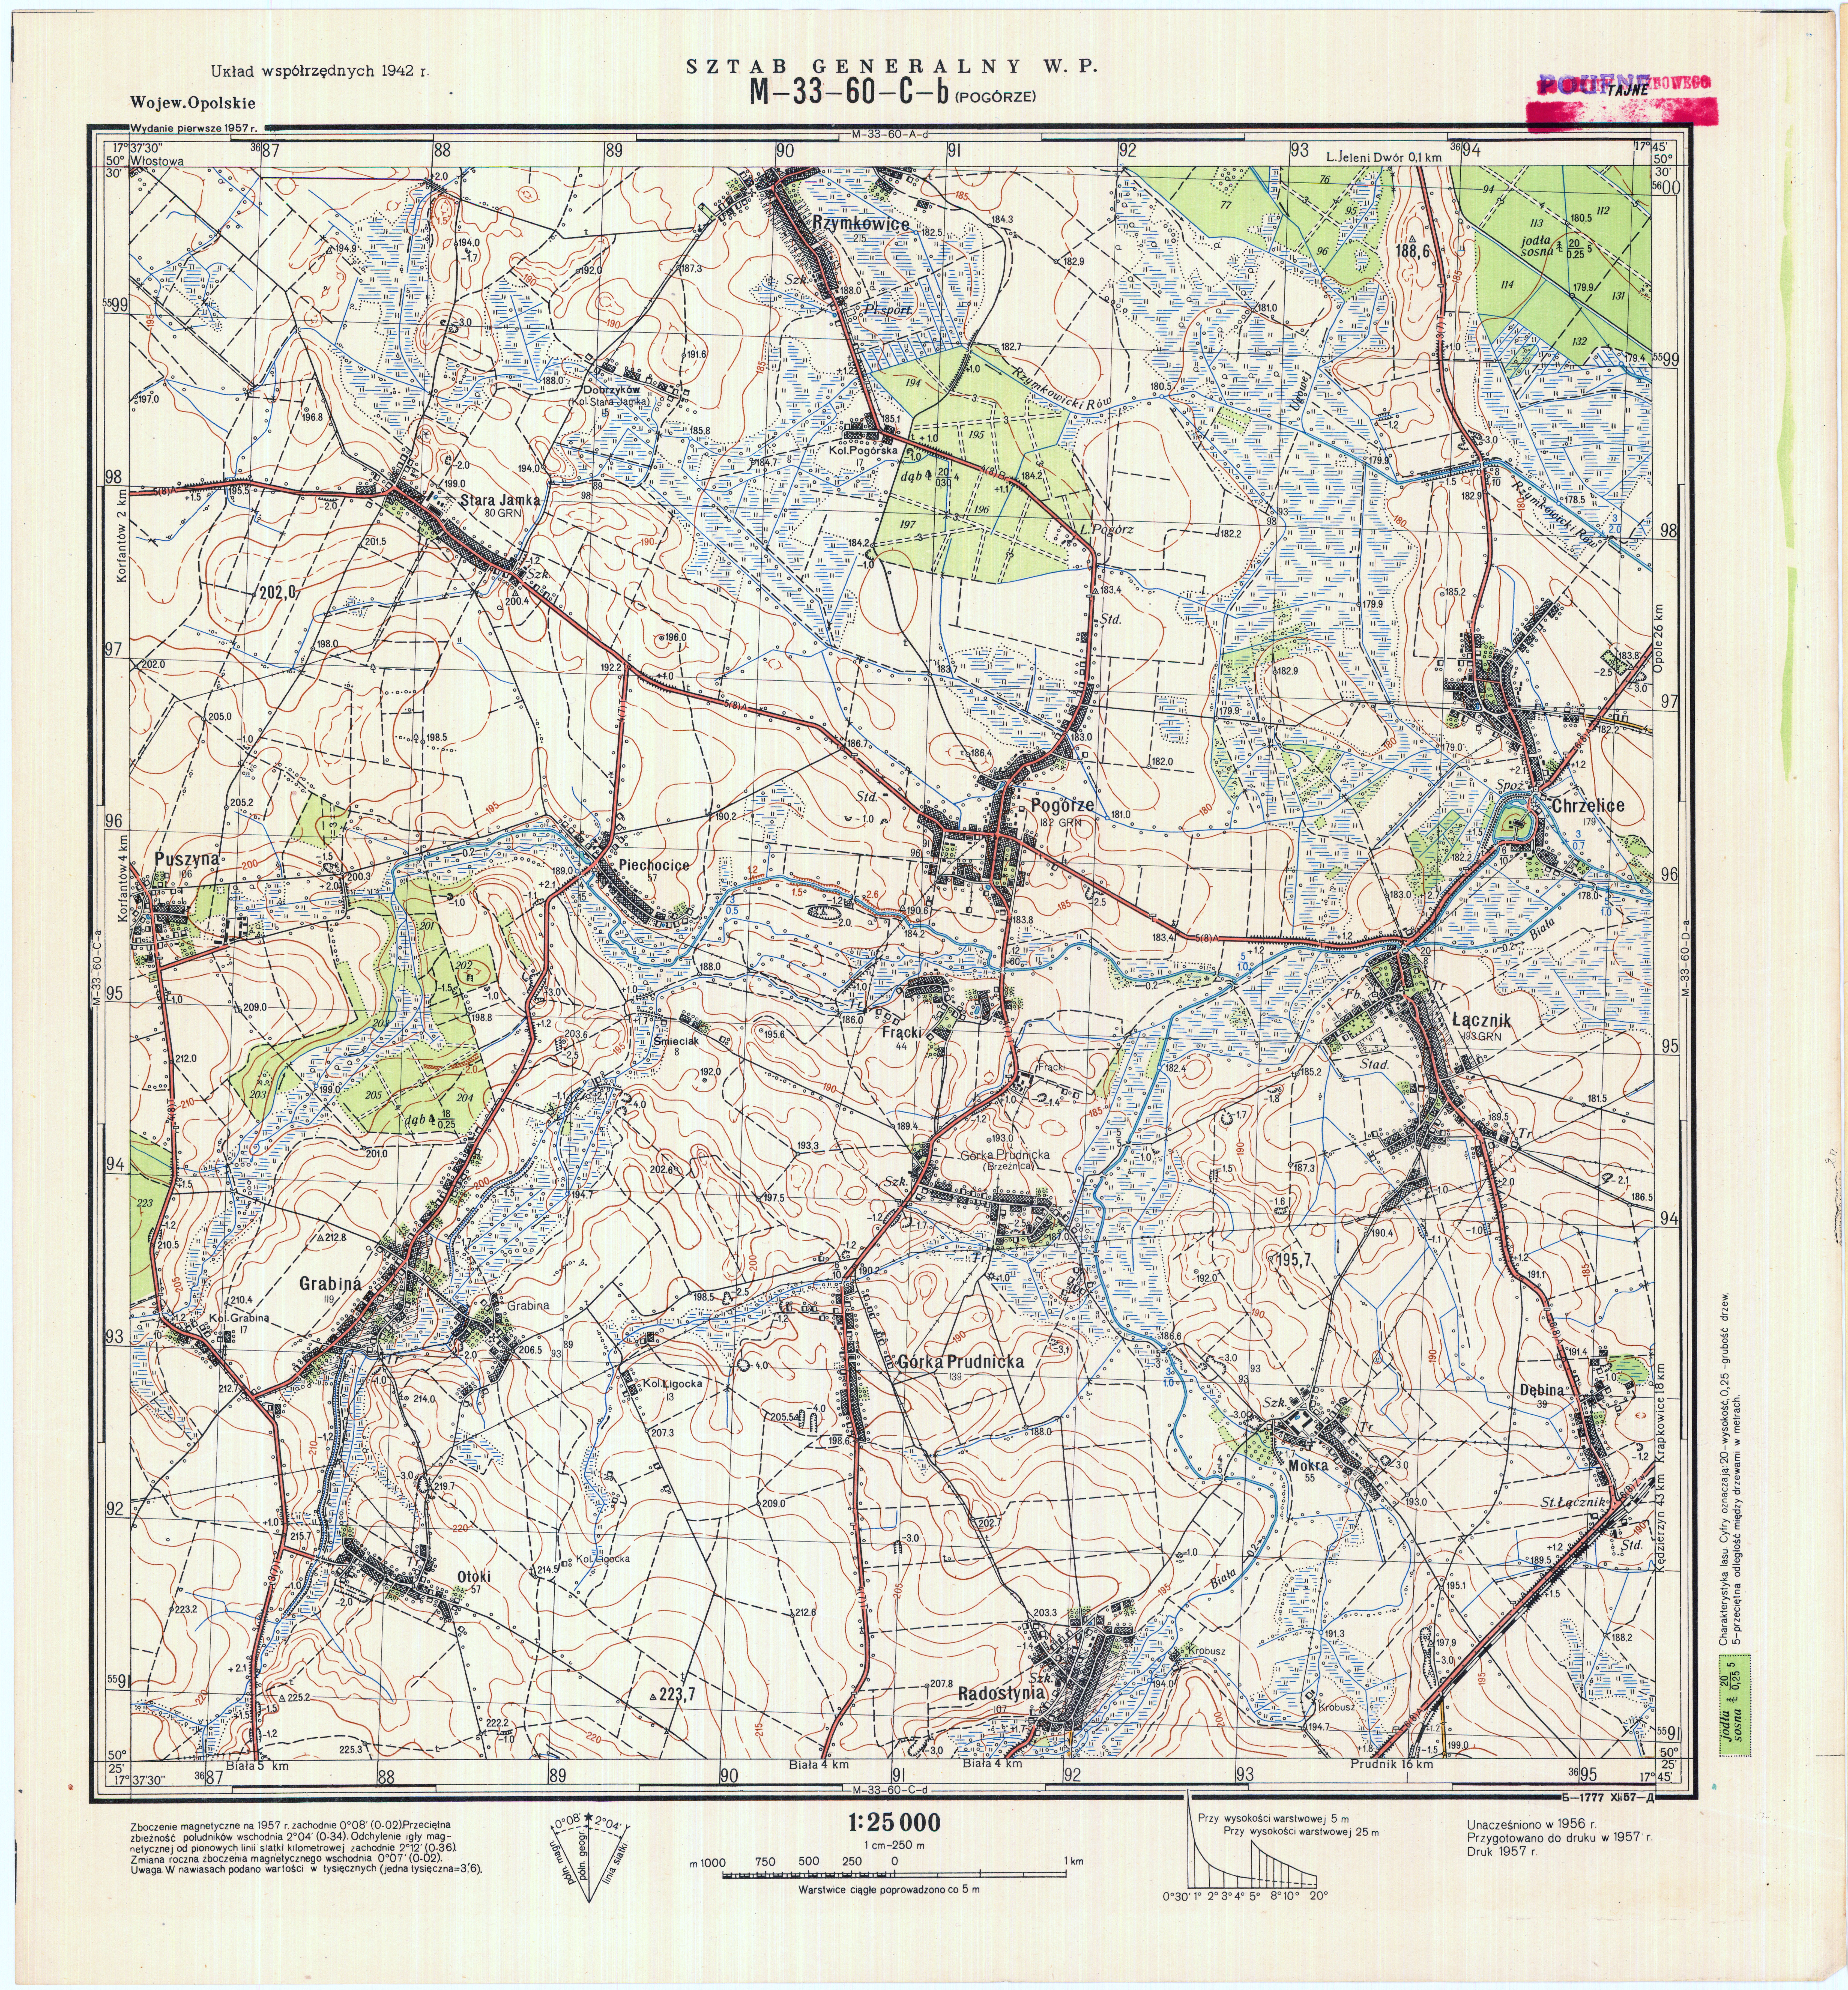 Mapy topograficzne LWP 1_25 000 - M-33-60-C-b_PODGORZE_1957.jpg